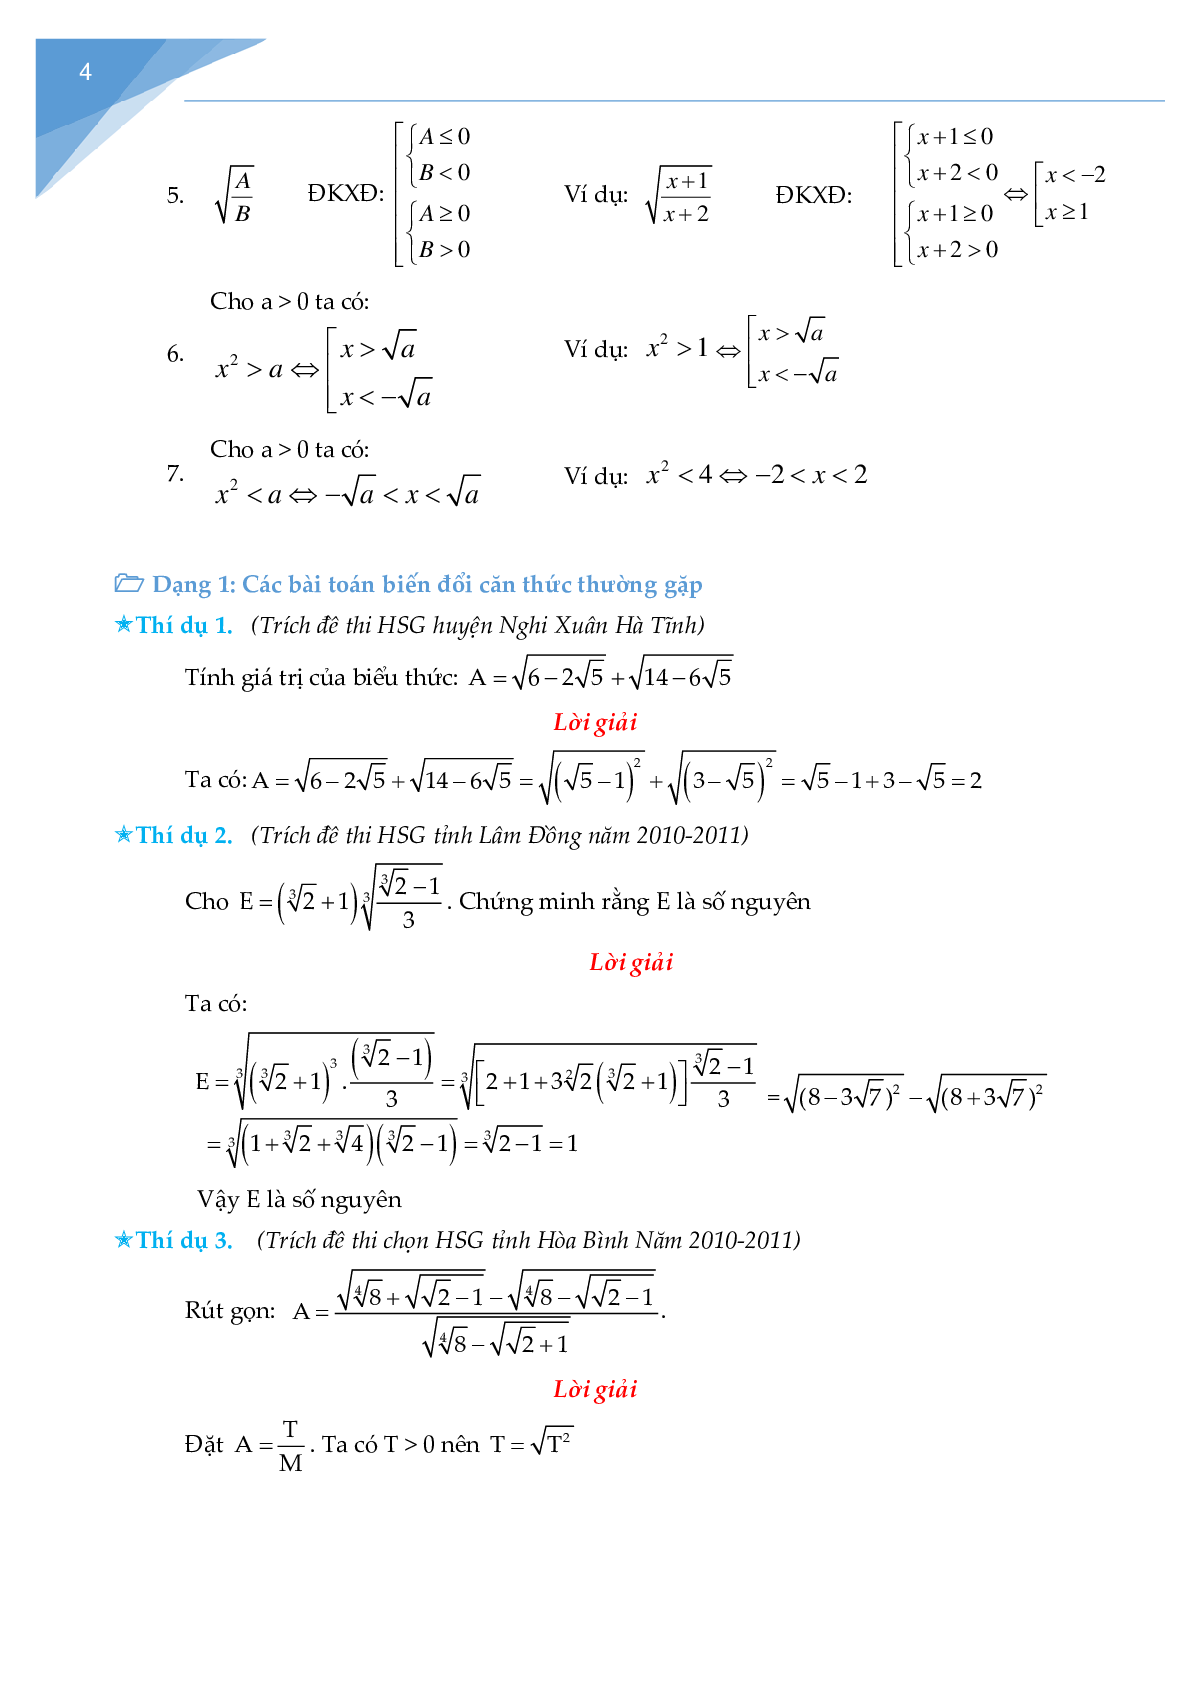 Rút gọn biểu thức chứa căn và bài toán liên quan (trang 4)